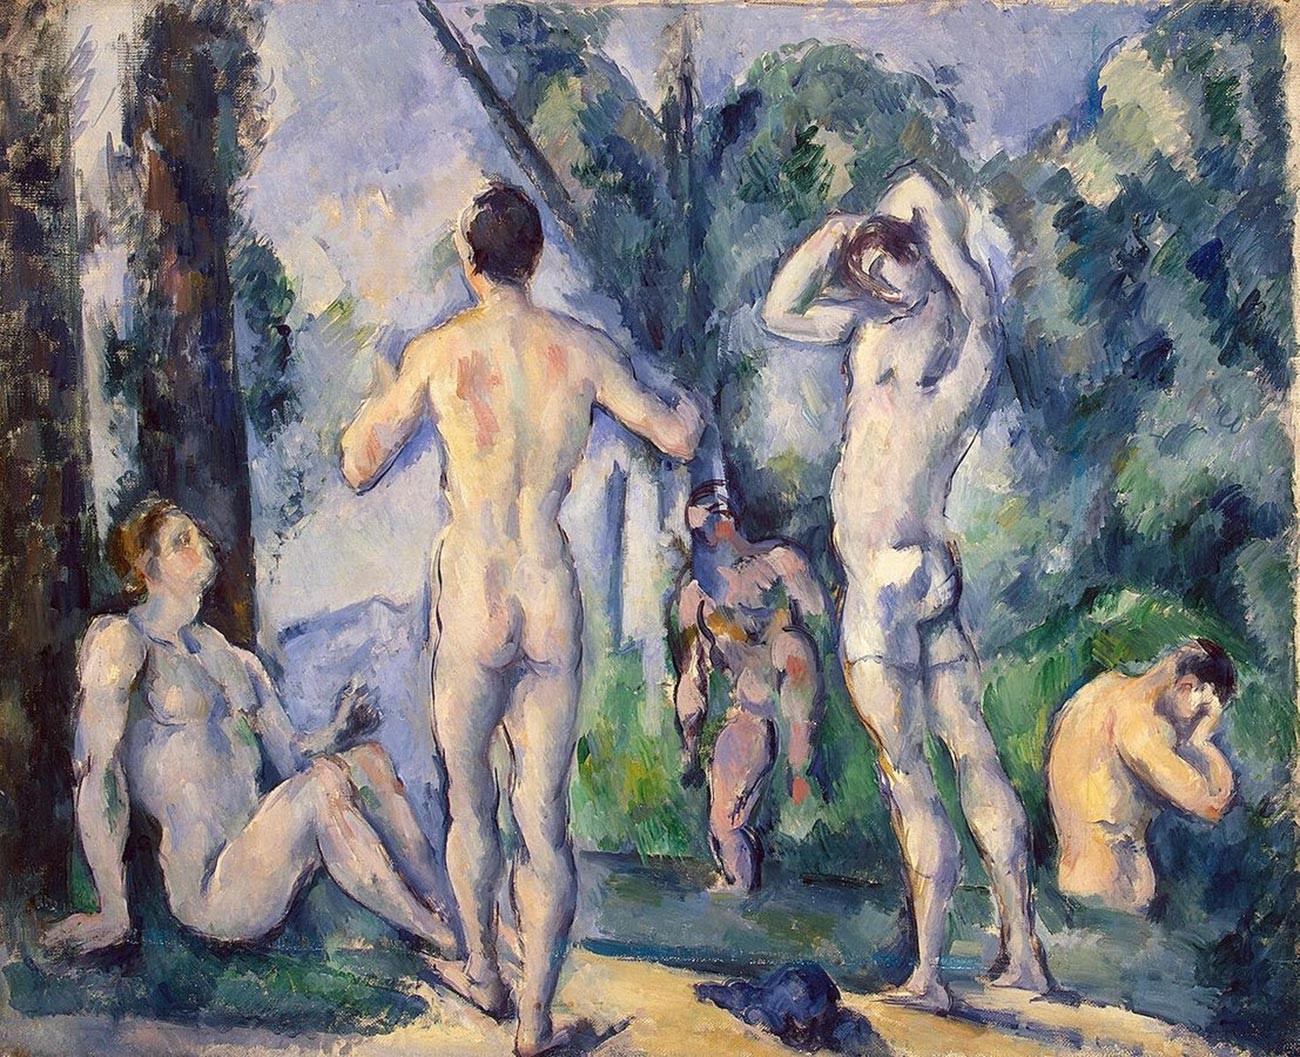 Baigneuses von Paul Cézanne